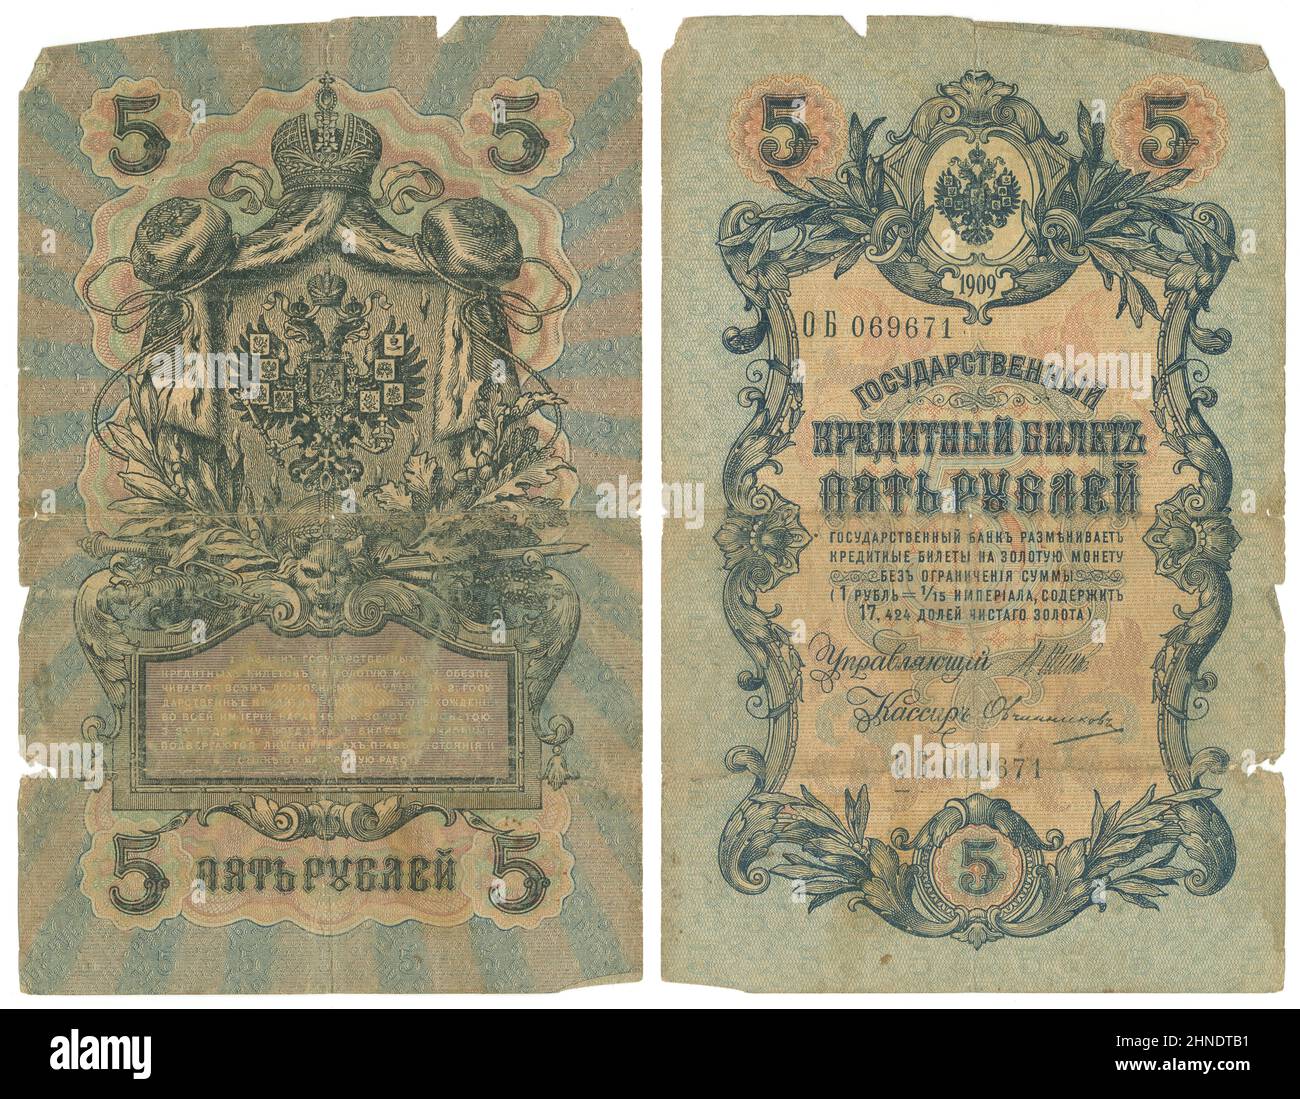 1909, cinque rubli nota, la Russia, obverse e reverse. Dimensioni effettive: 156mm x 99mm. Foto Stock